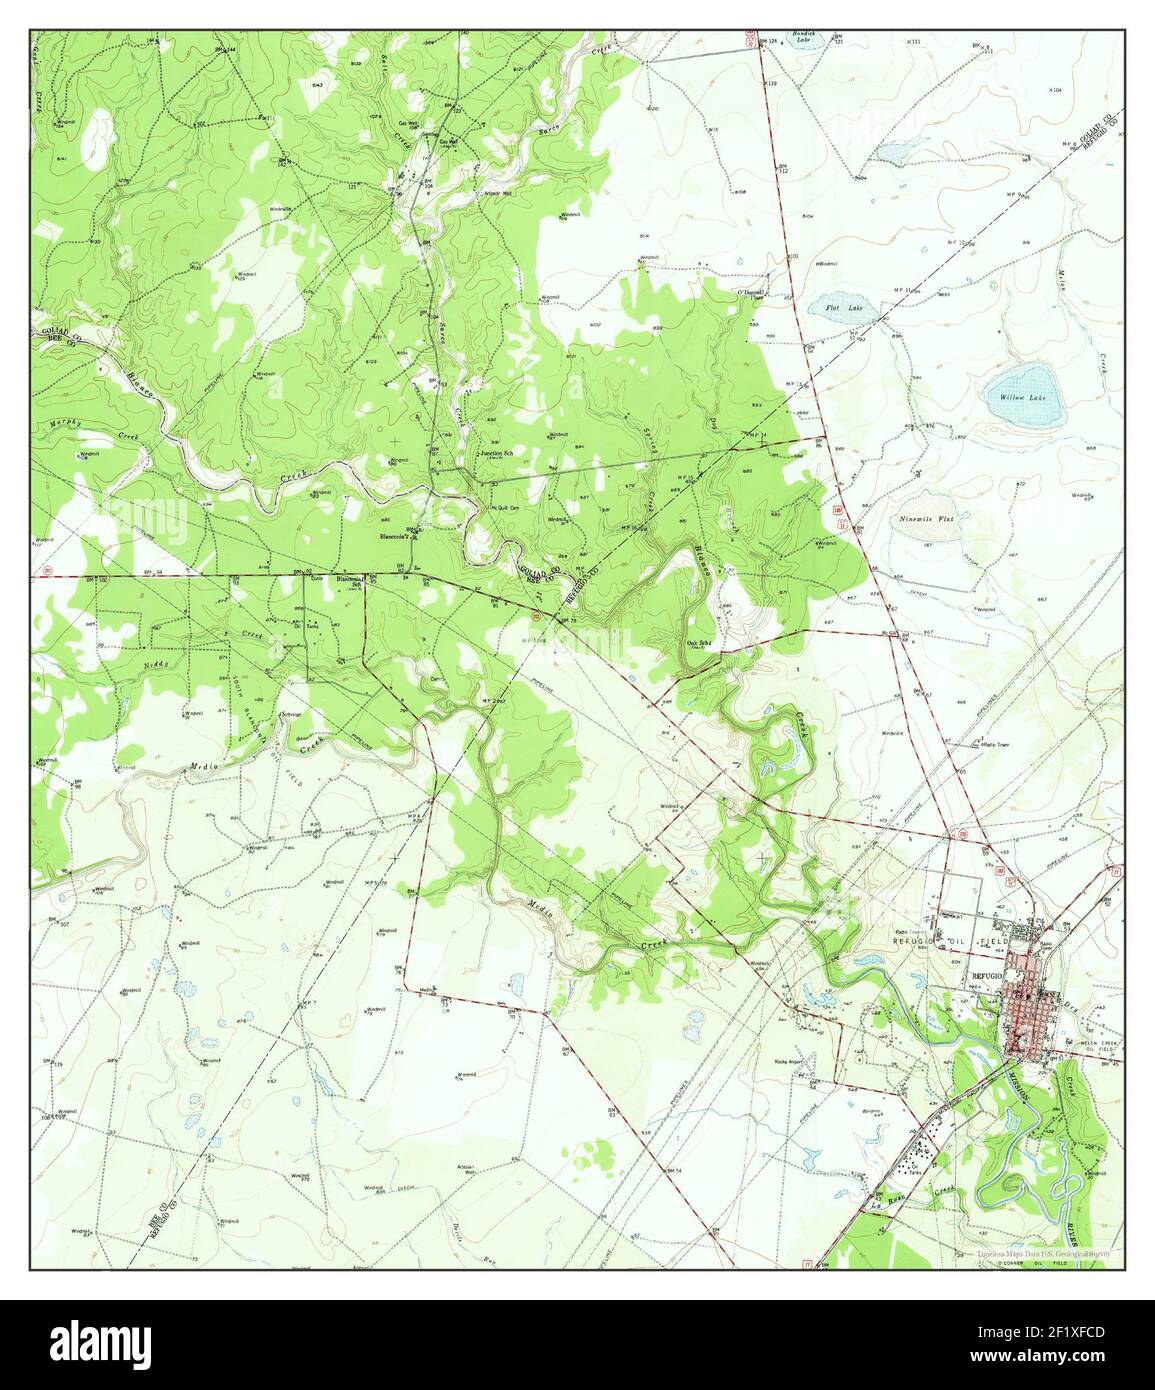 Refugio, Texas, carte 1954, 1:62500, États-Unis d'Amérique par Timeless Maps, données U.S. Geological Survey Banque D'Images